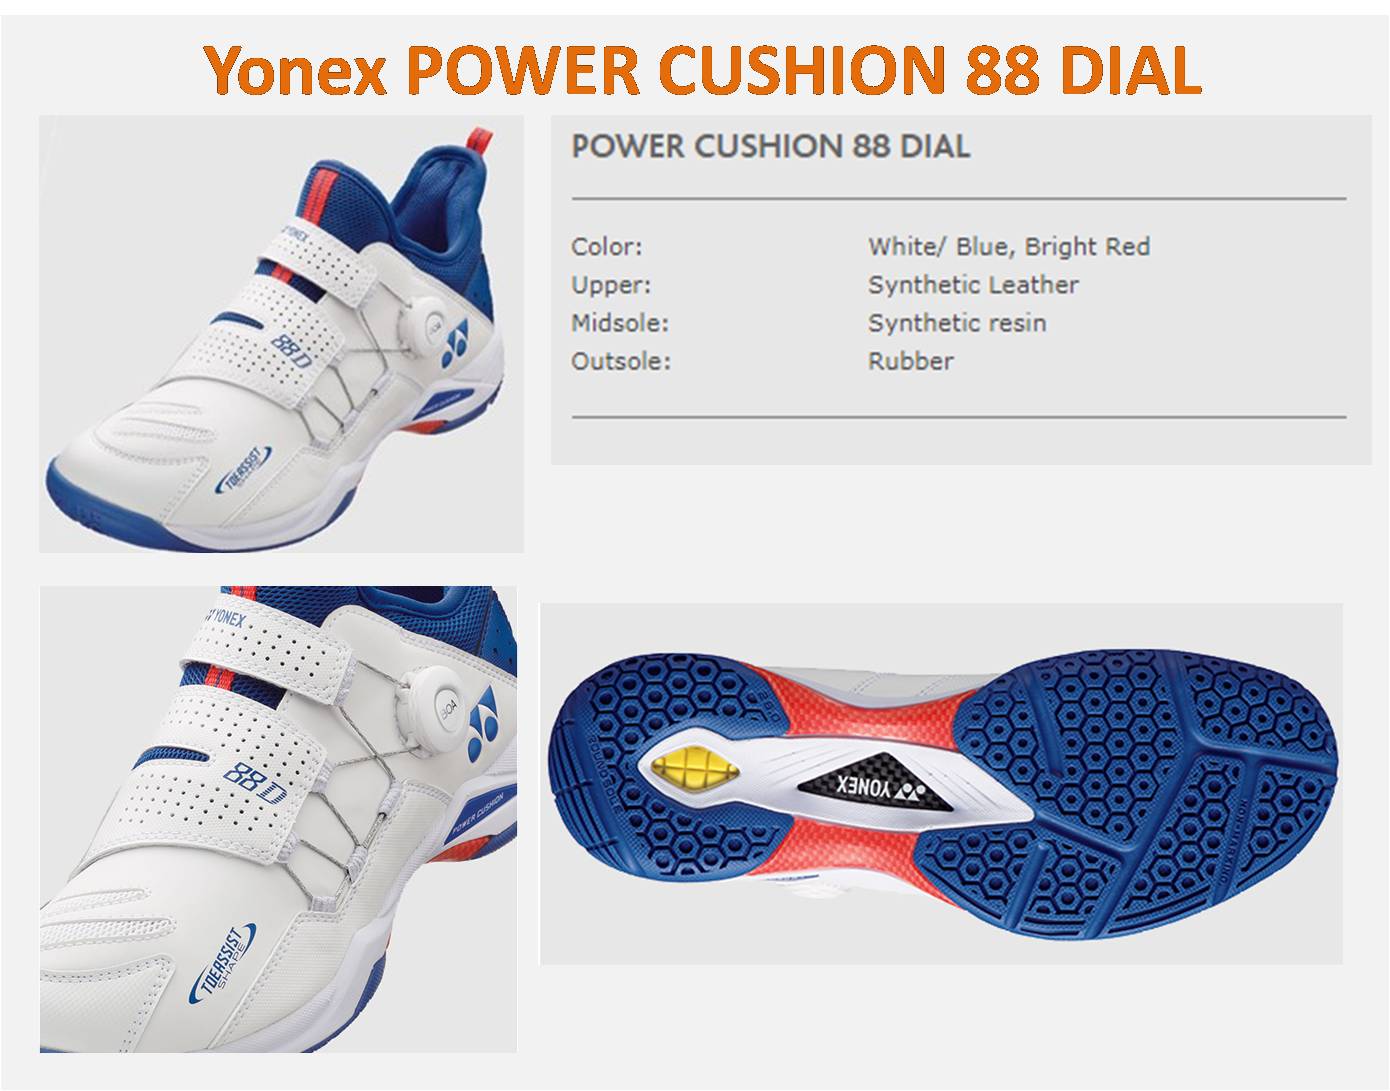  Yonex_power_Cushion_88_Dial_details 